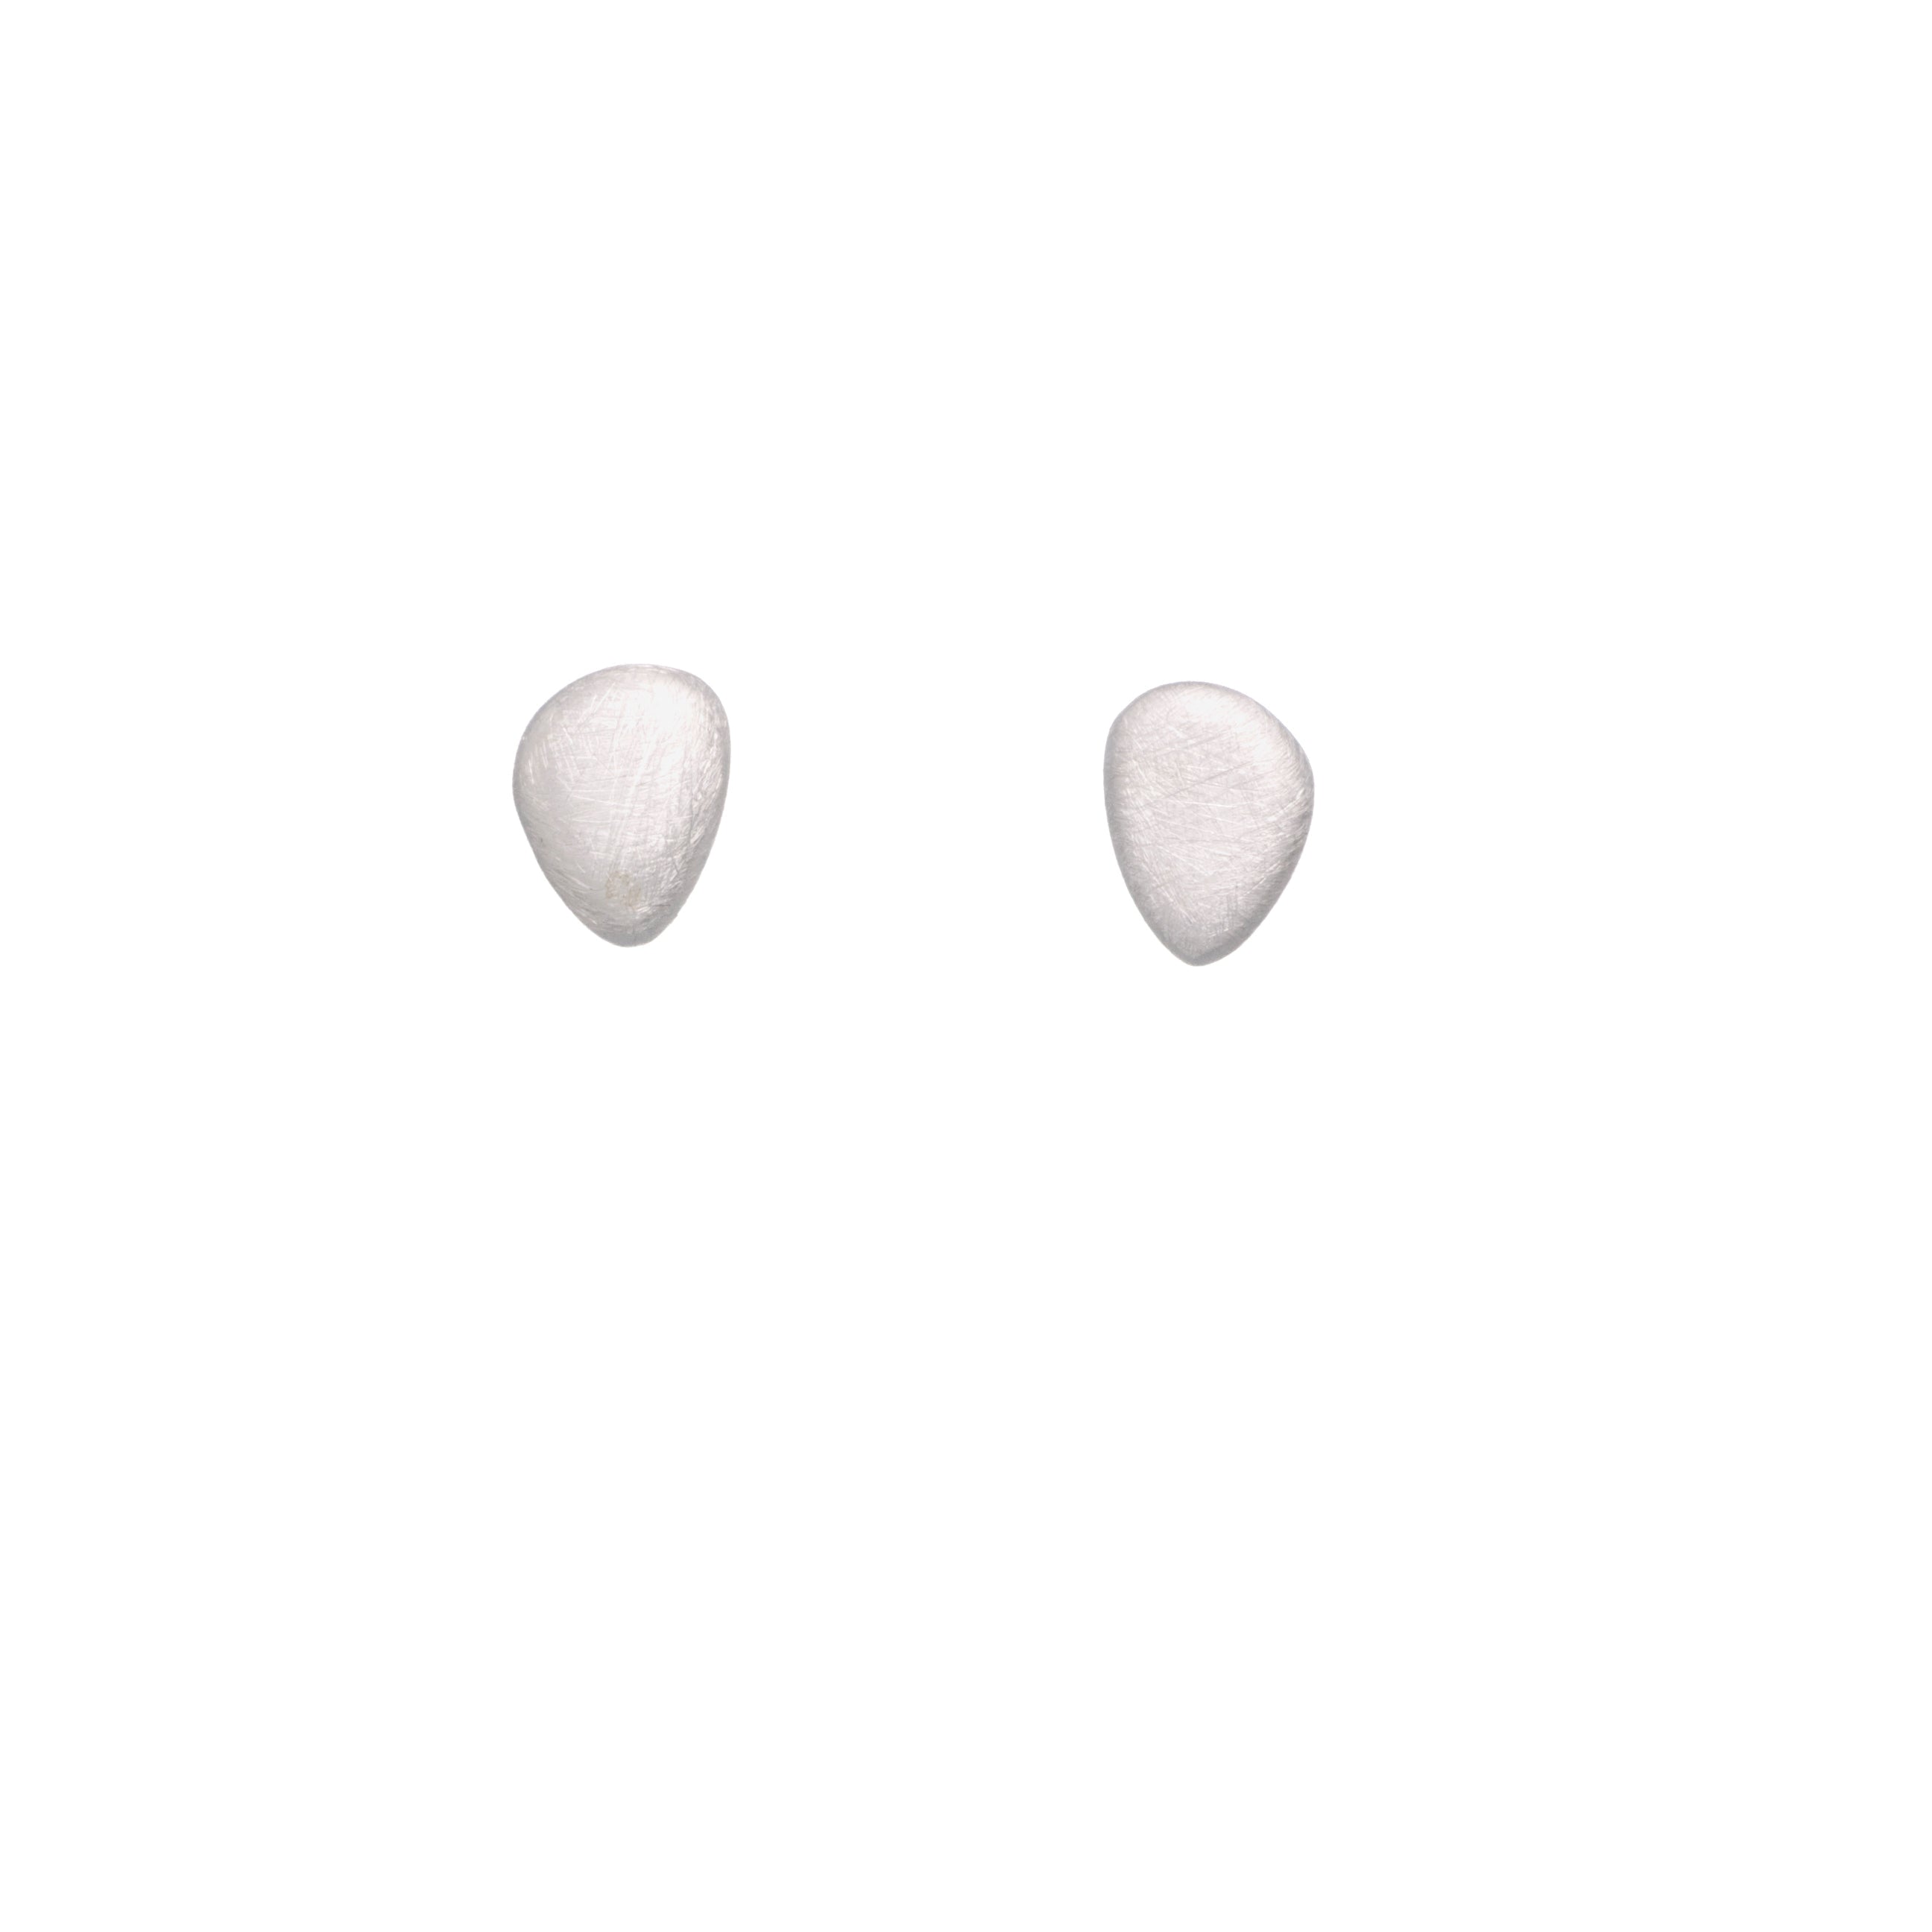 Silver Flat Pebble Earrings - The Nancy Smillie Shop - Art, Jewellery & Designer Gifts Glasgow